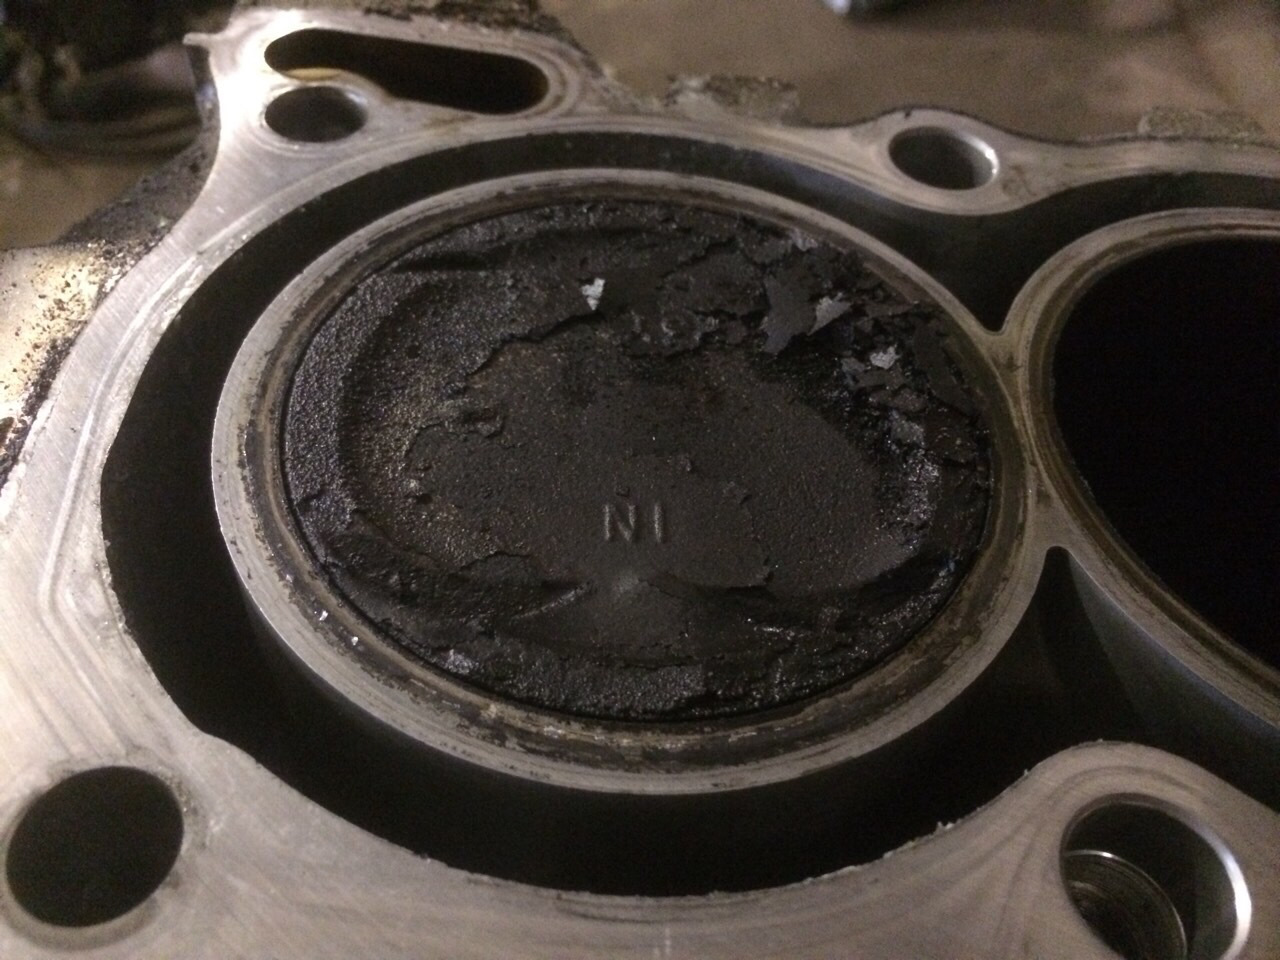 После ремонта двигателя ест масло